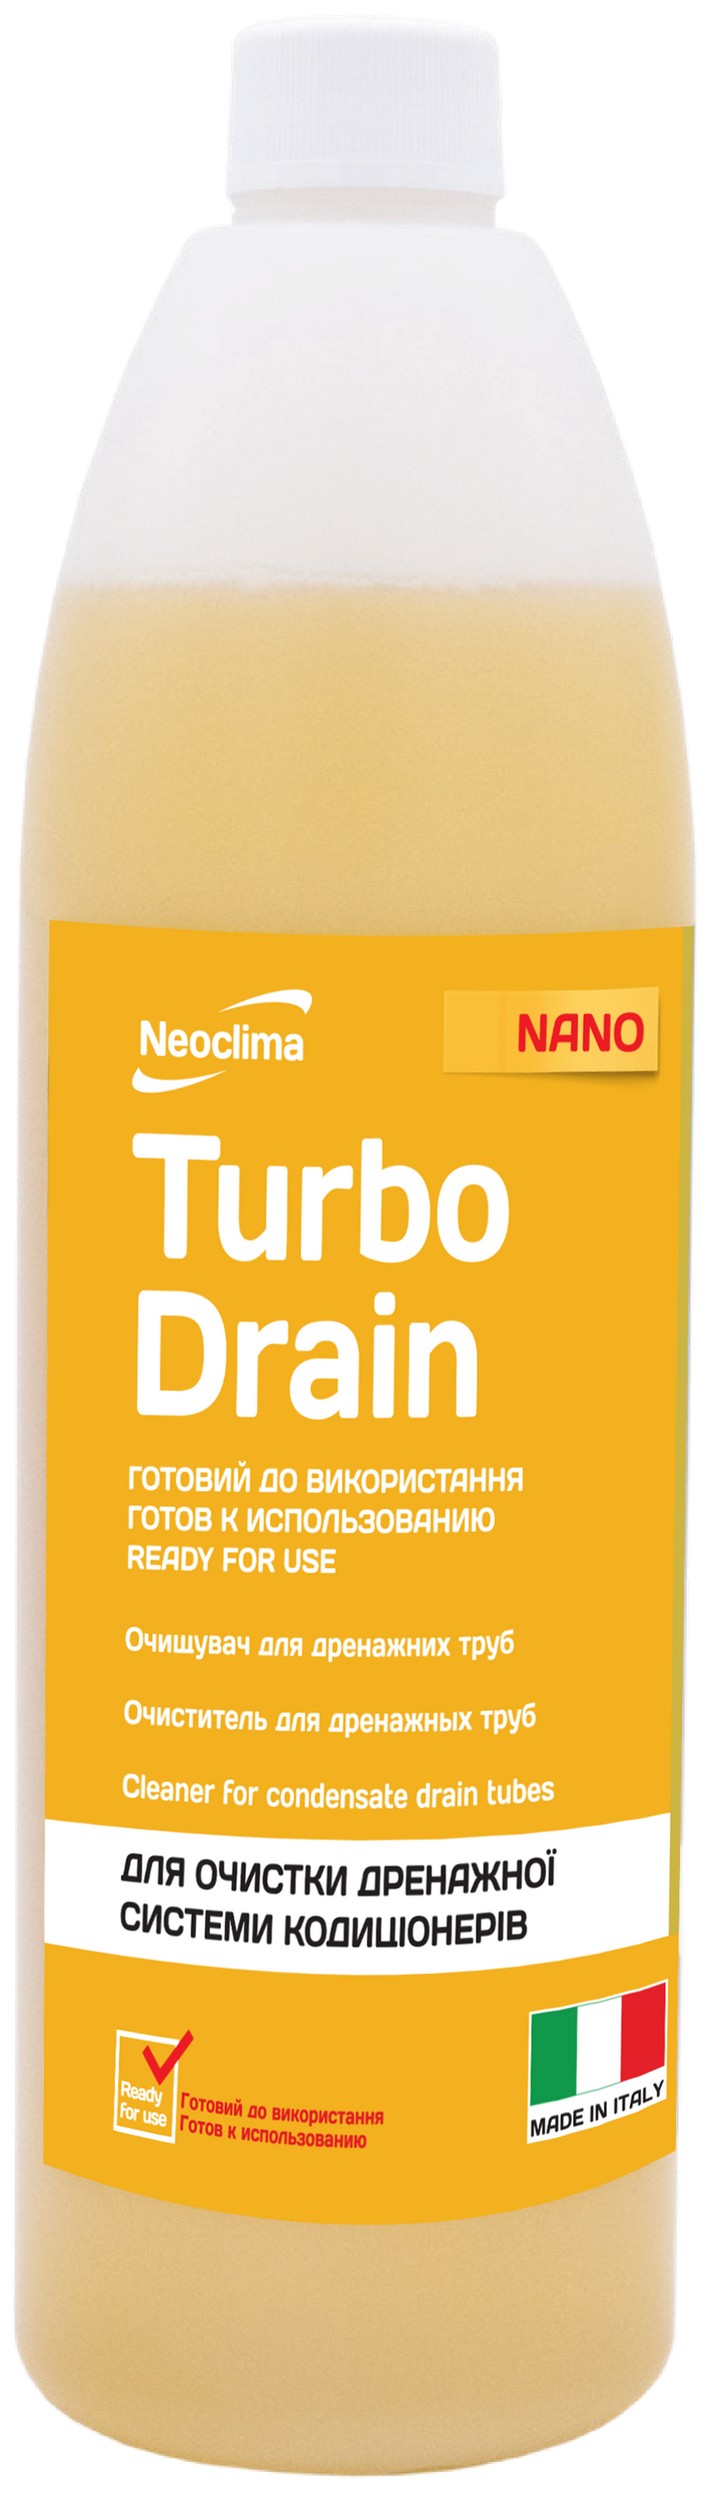 Очититель внутреннего блока Neoclima Тurbo Drain 1 л, готовый раствор